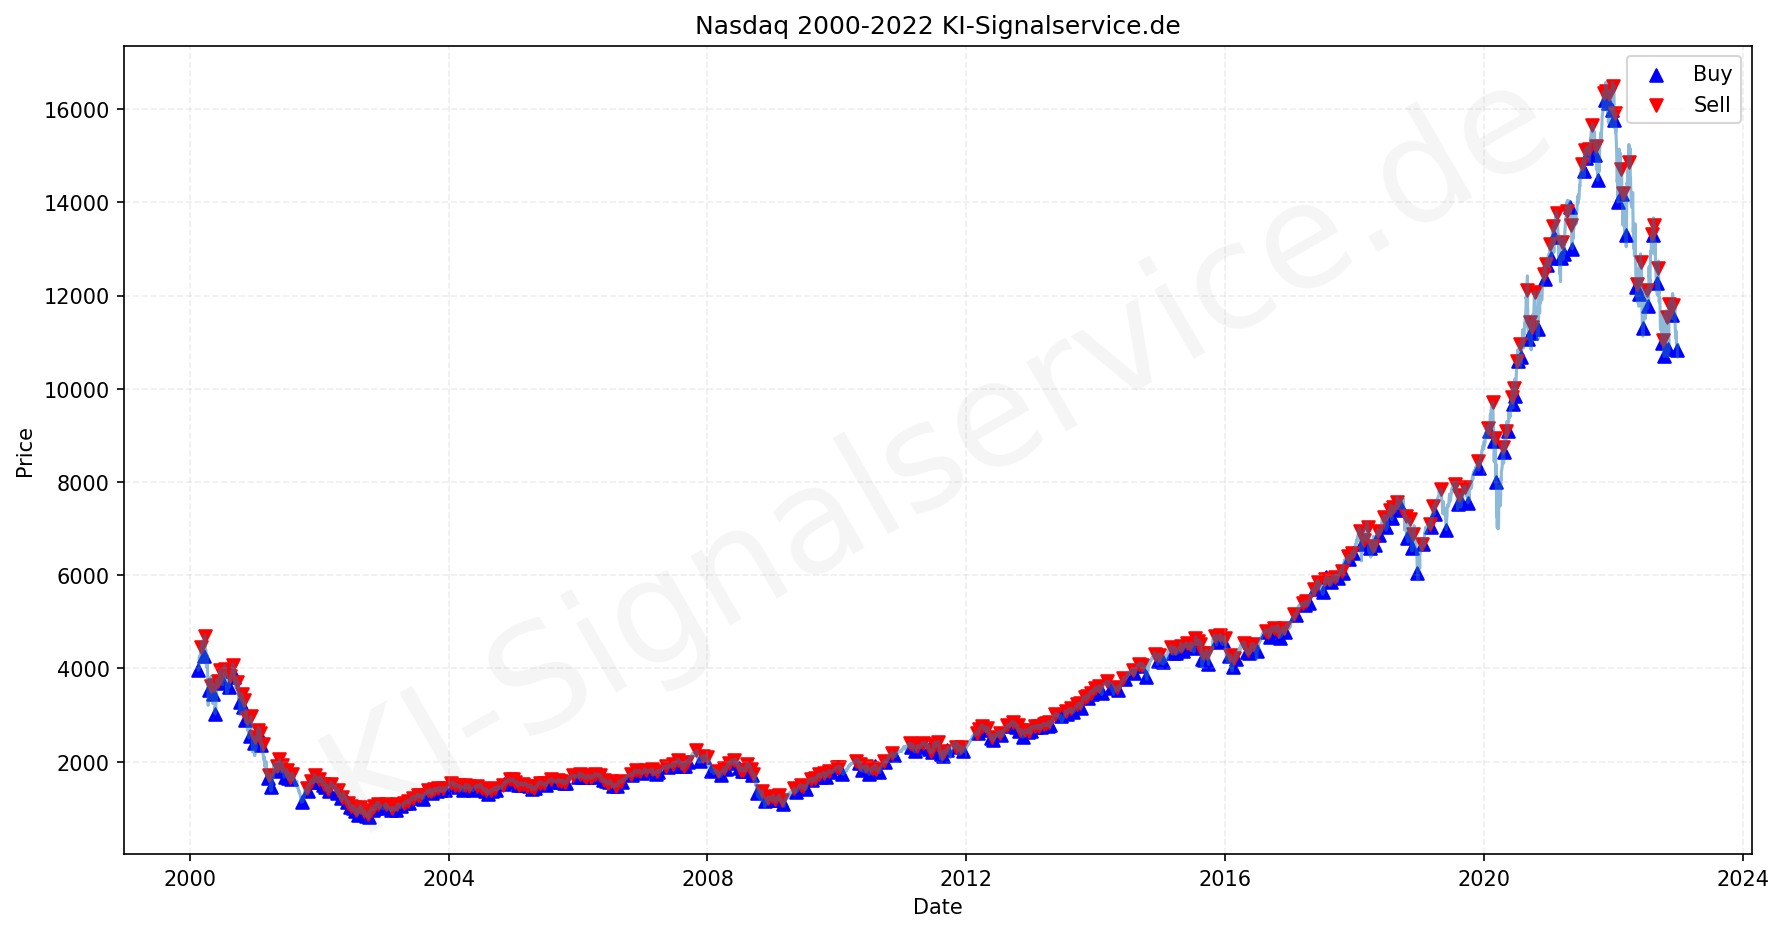 NADAQ Index Performance Chart - KI Tradingsignale 2000-2022